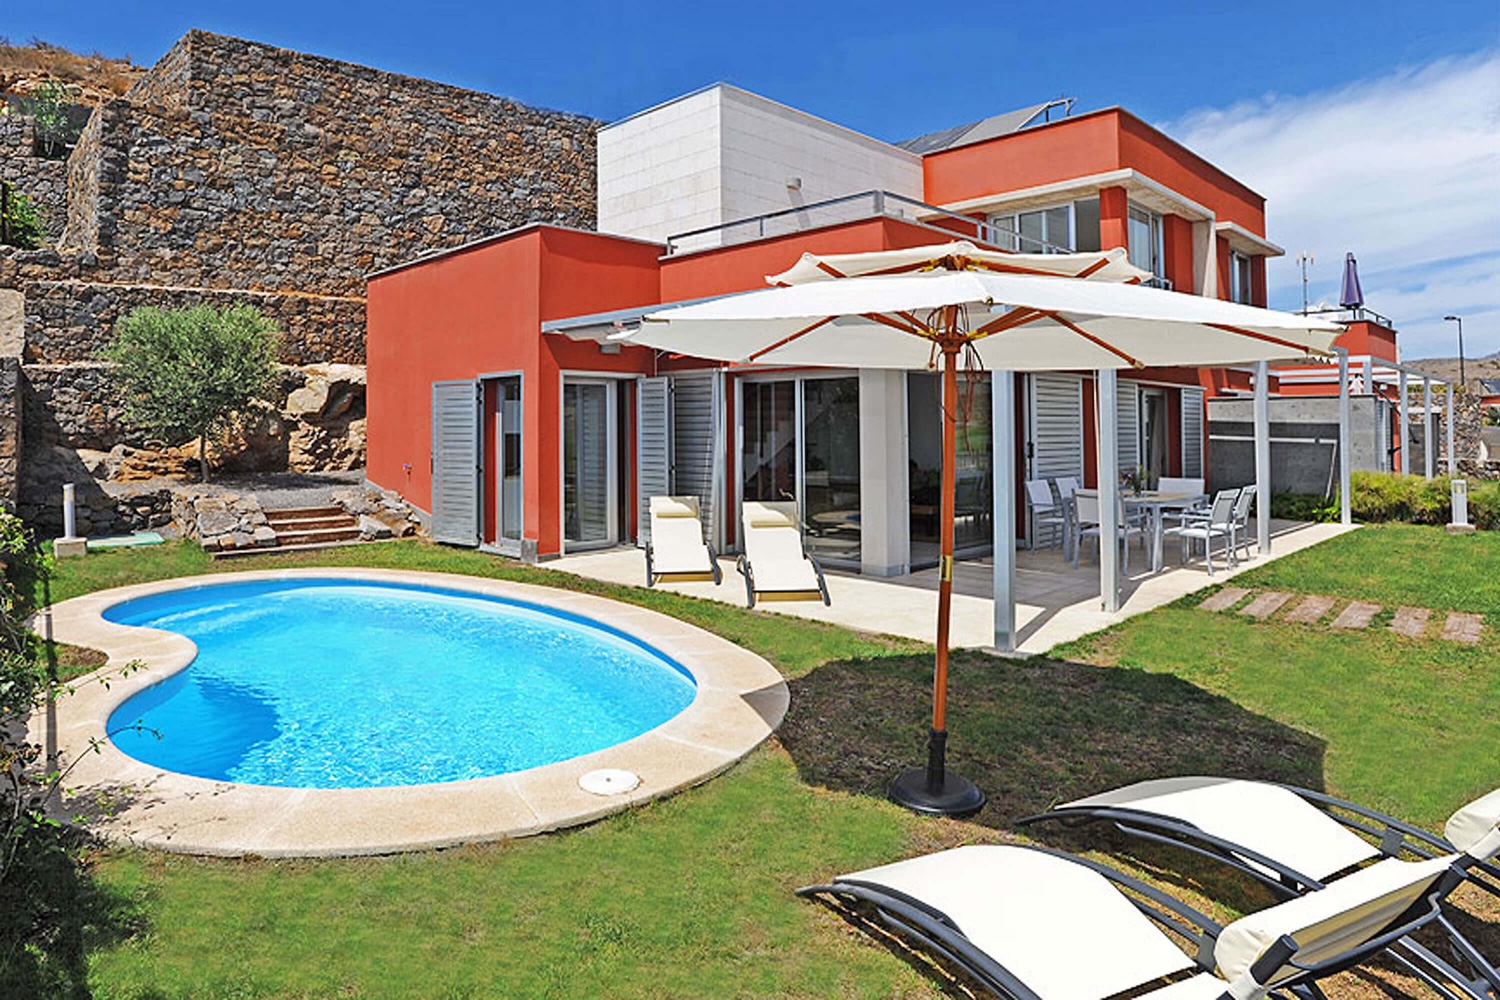 Moderna villa a due piani, decorata con stile e con piscina privata riscaldata vicino al campo da golf nord del resort